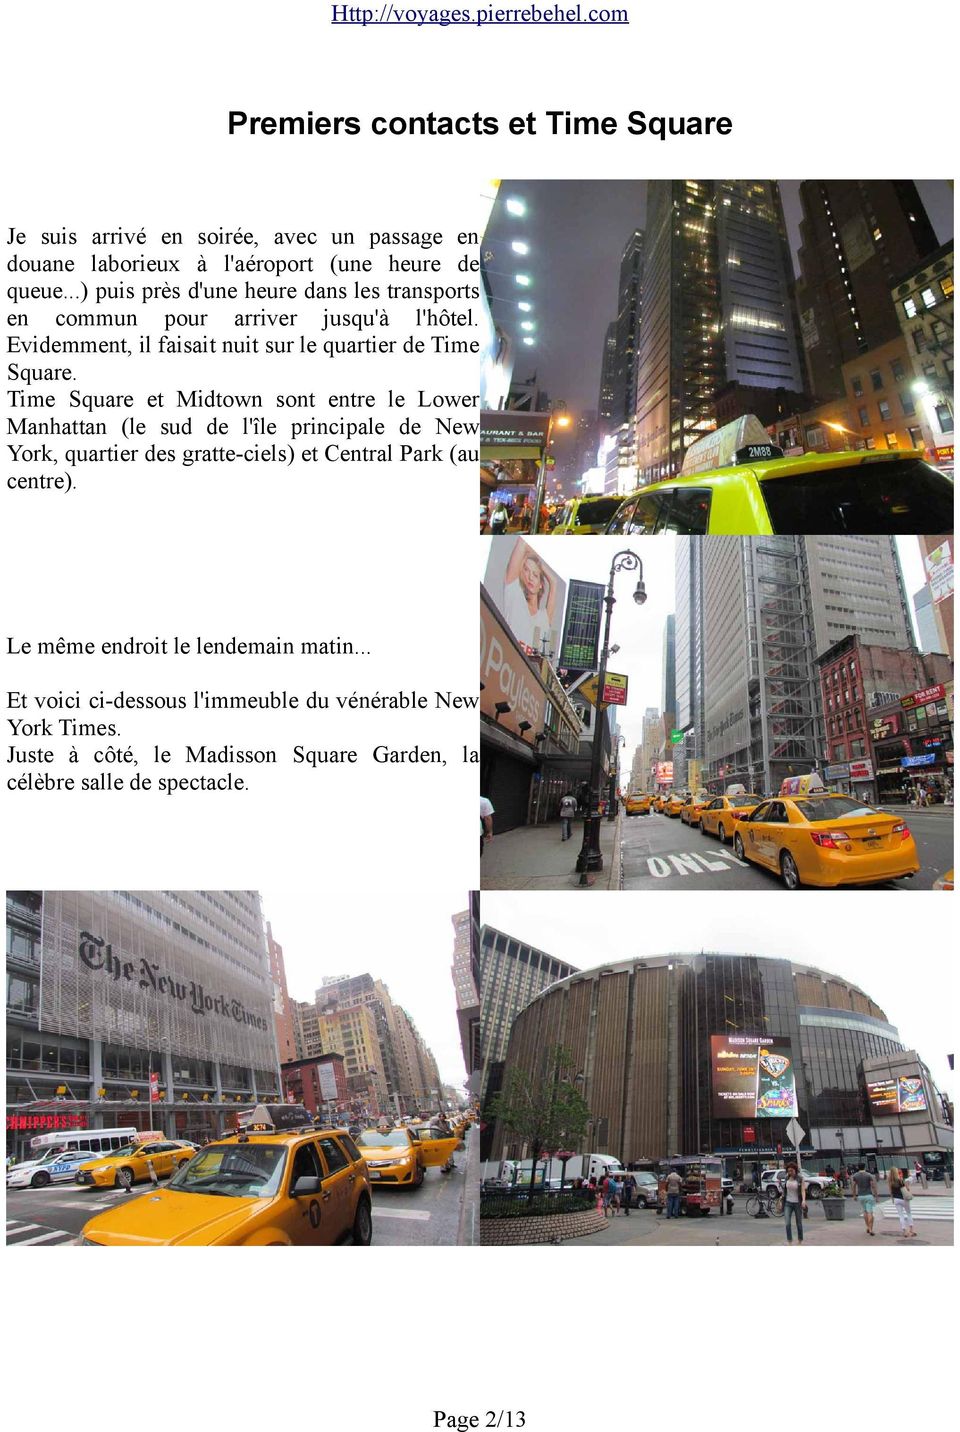 Time Square et Midtown sont entre le Lower Manhattan (le sud de l'île principale de New York, quartier des gratte-ciels) et Central Park (au centre).